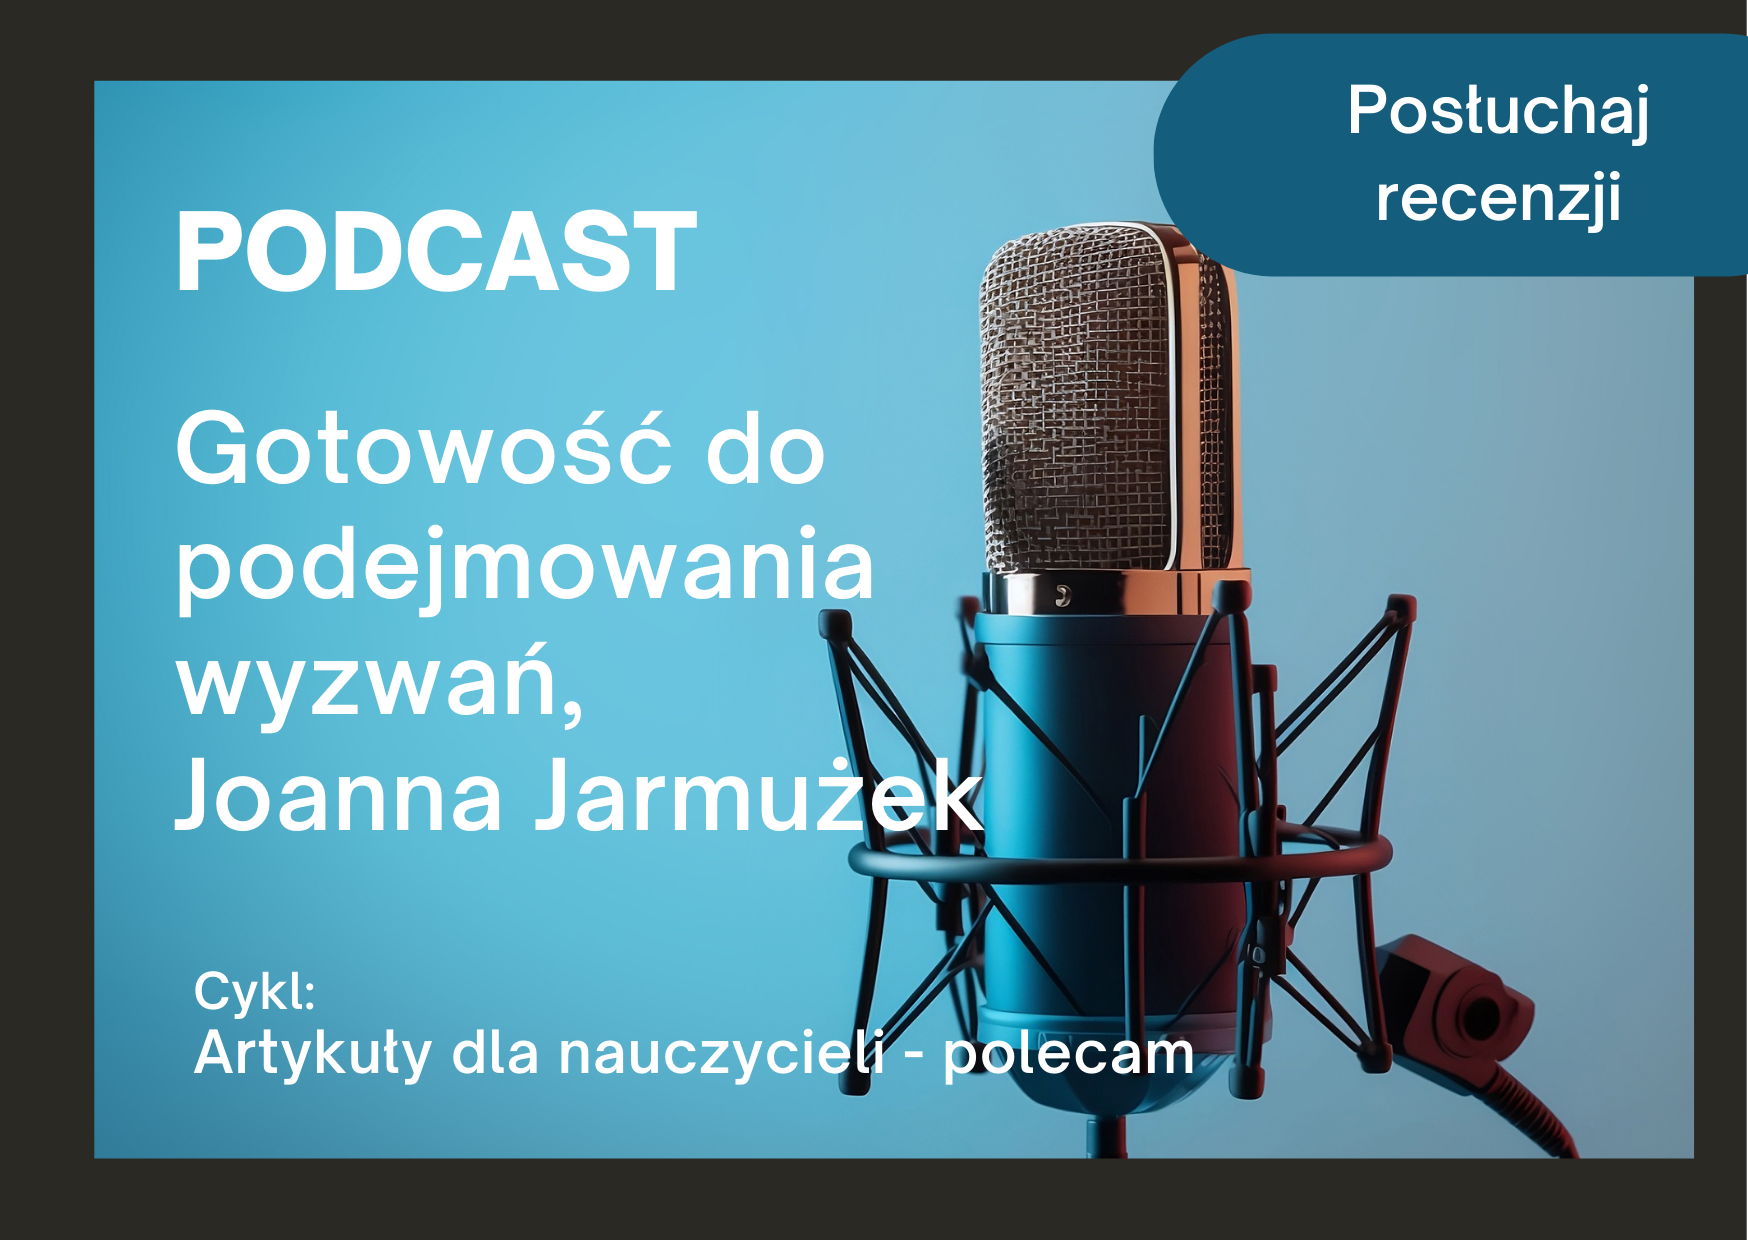 Podcast z recenzją artykułu: Gotowość do podejmowania wyzwań, Joanna Jarmużek 